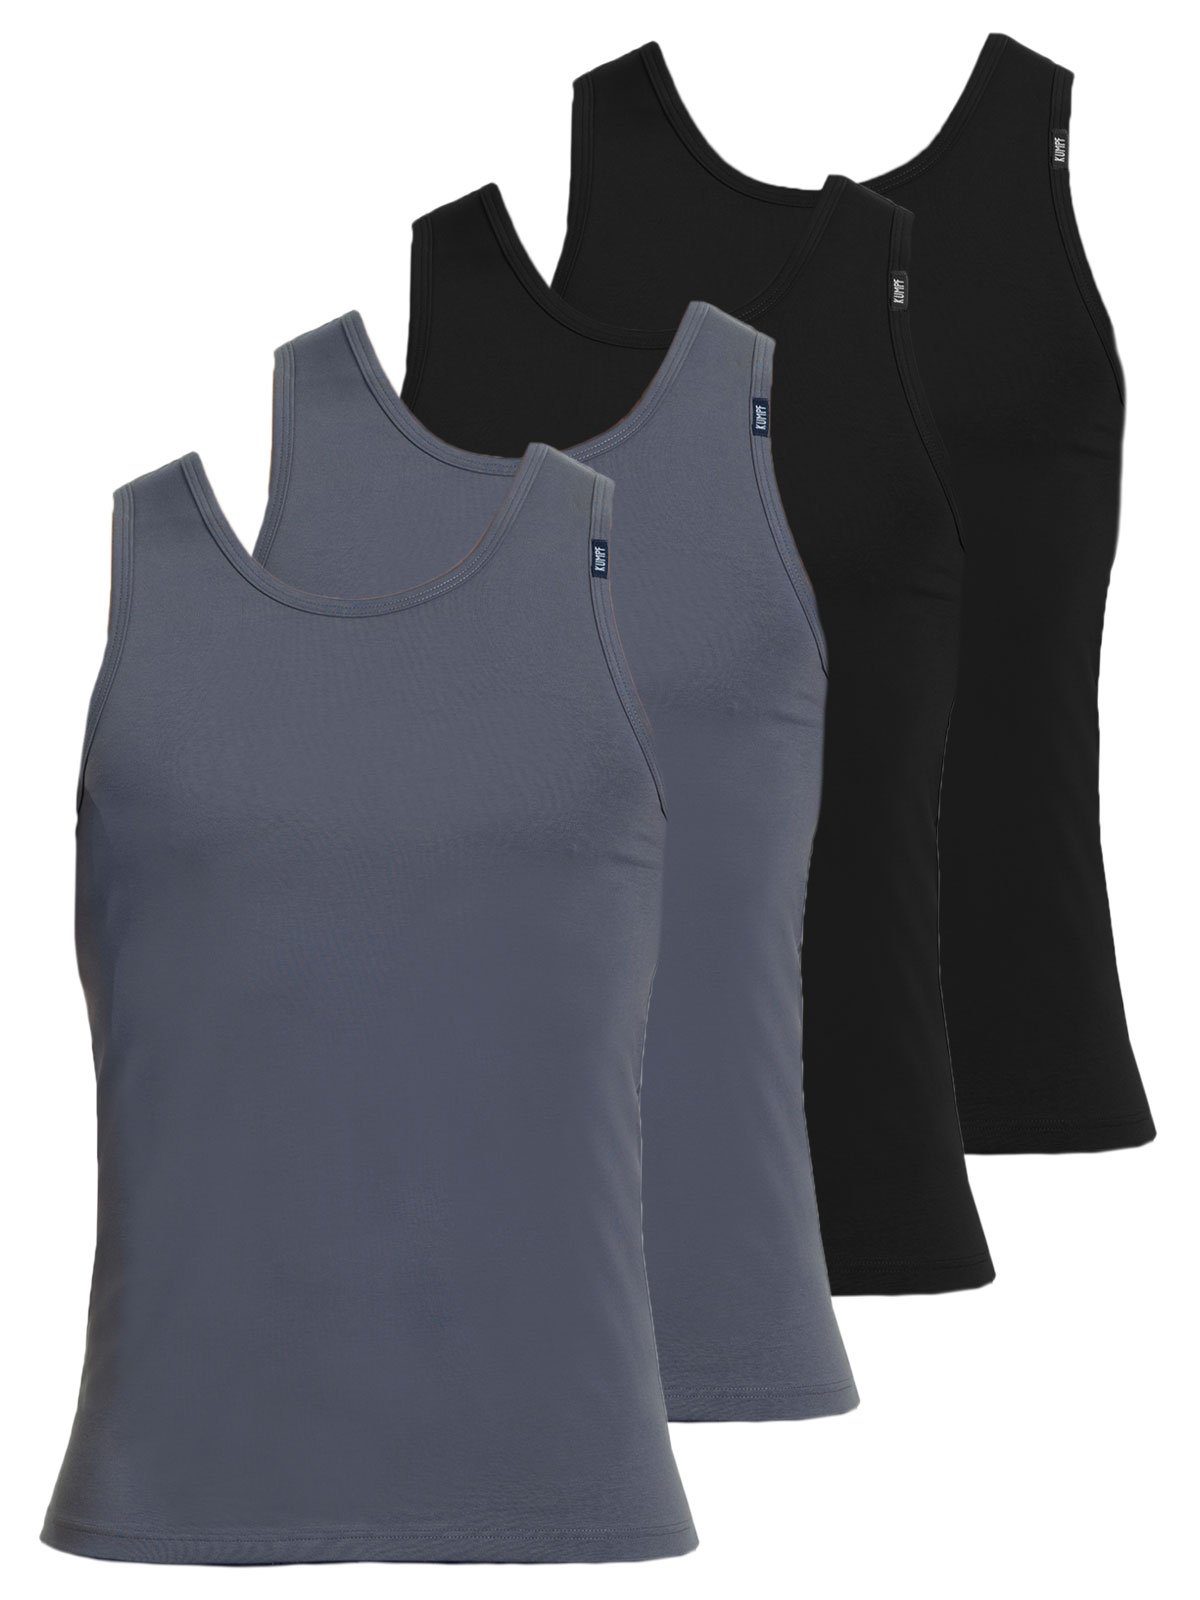 KUMPF Achselhemd 4er Sparpack Herren Unterhemd Bio Cotton (Spar-Set, 4-St) hohe Markenqualität mittelgrau schwarz